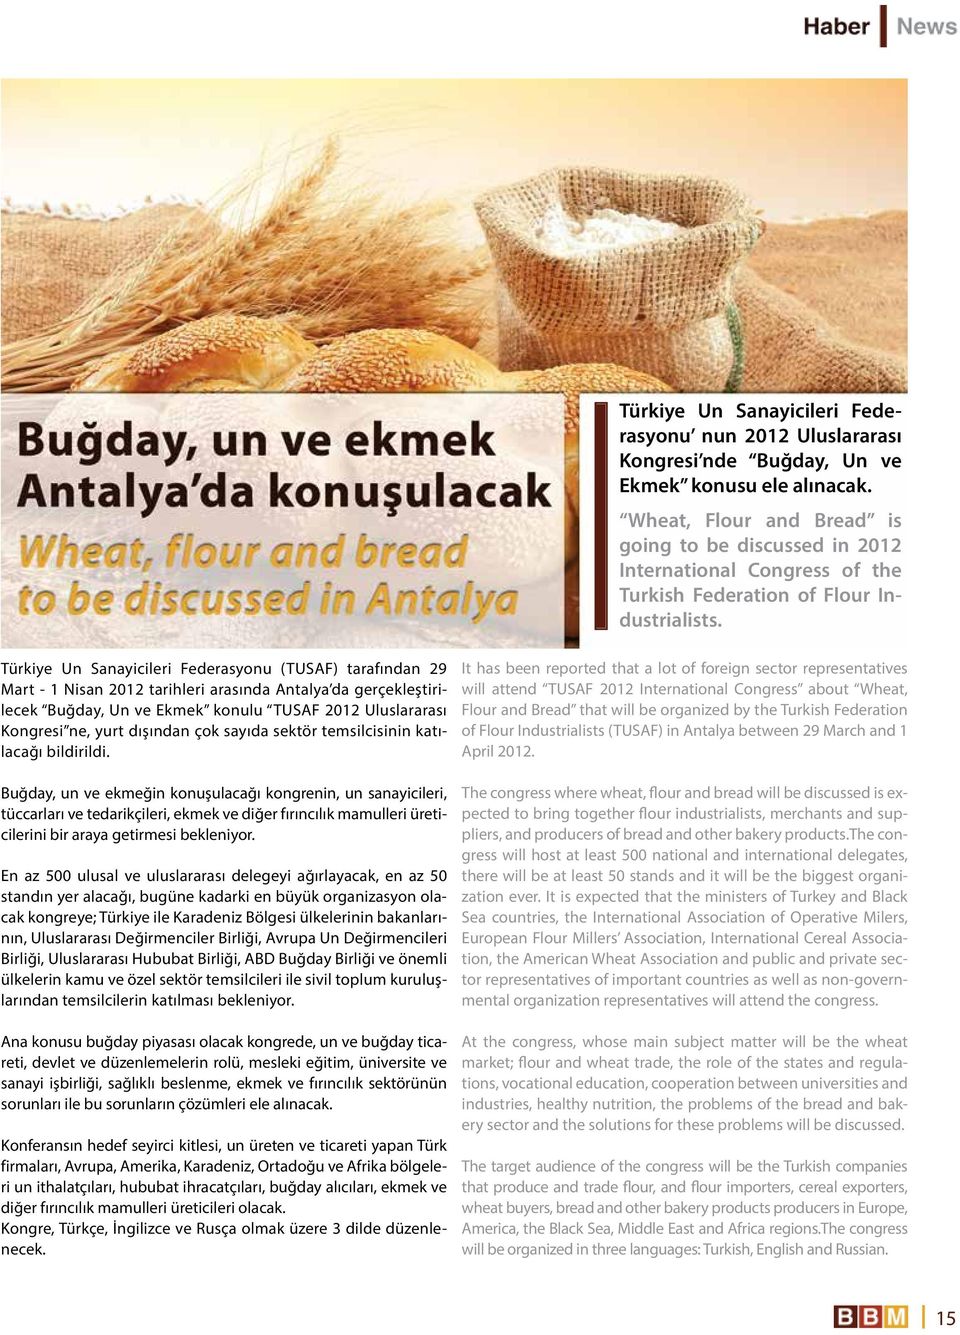 Türkiye Un Sanayicileri Federasyonu (TUSAF) tarafından 29 Mart - 1 Nisan 2012 tarihleri arasında Antalya da gerçekleştirilecek Buğday, Un ve Ekmek konulu TUSAF 2012 Uluslararası Kongresi ne, yurt